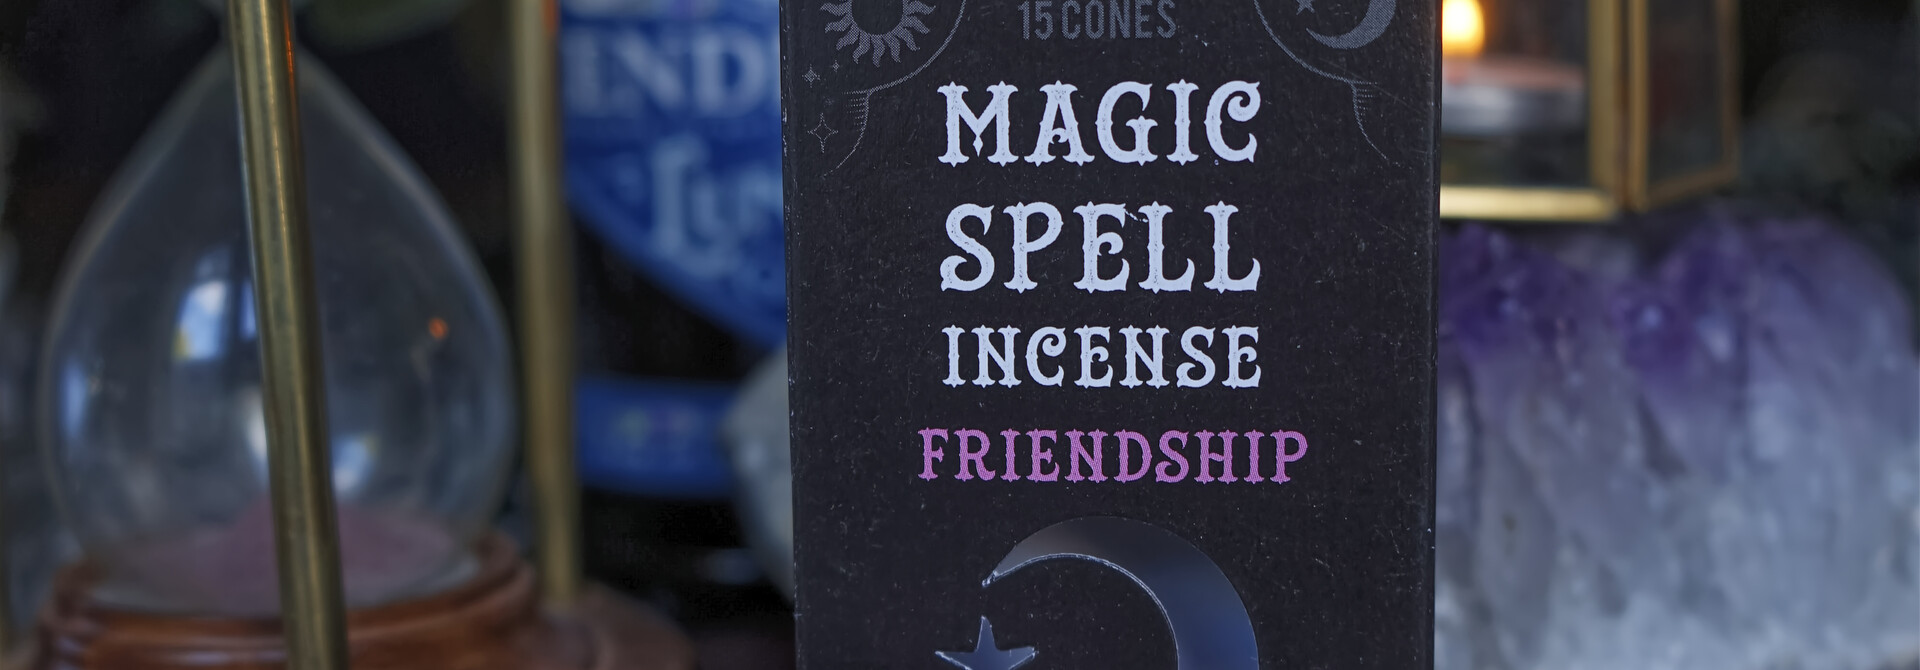 Magic Spell Incense Cones FRIENDSHIP